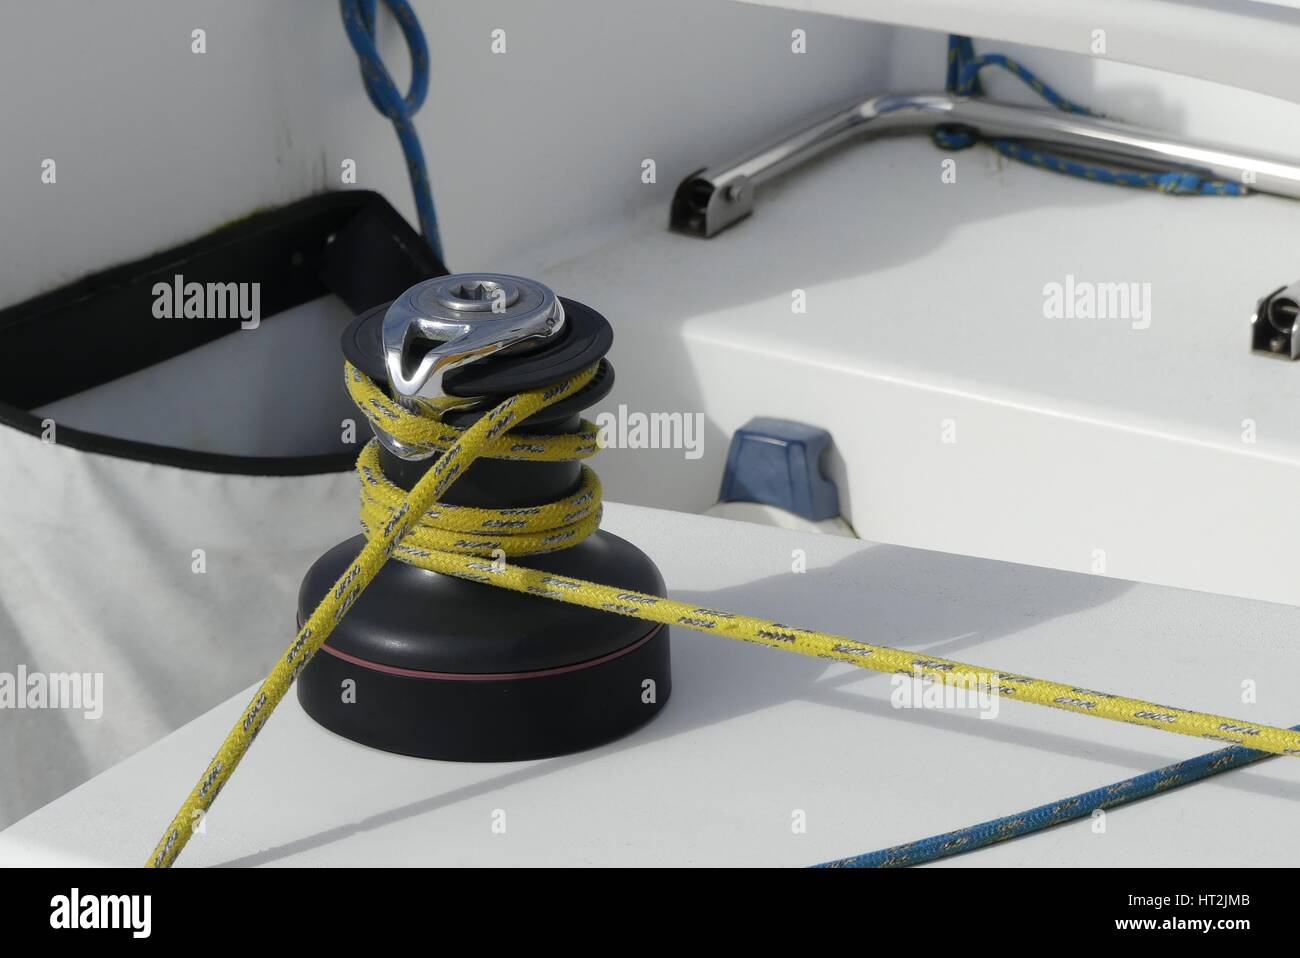 Détails d'une corde jaune sécurisée sur le treuil sur bateau à voile racer, concept nautique Banque D'Images